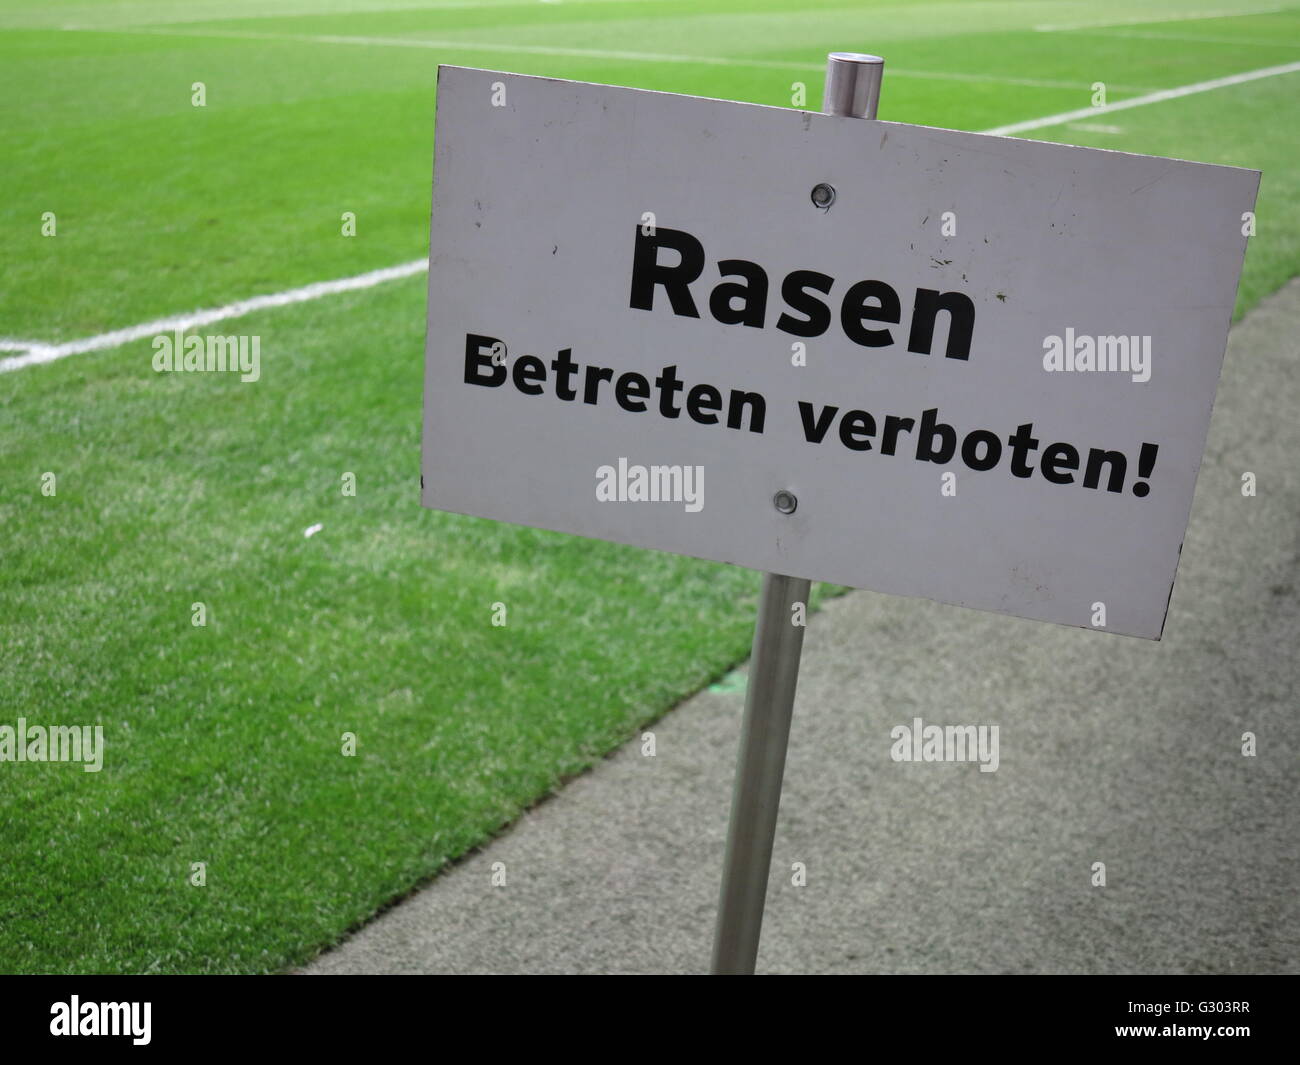 Sign, Rasen betreten verboten!, German for Keep off the grass! Stock Photo